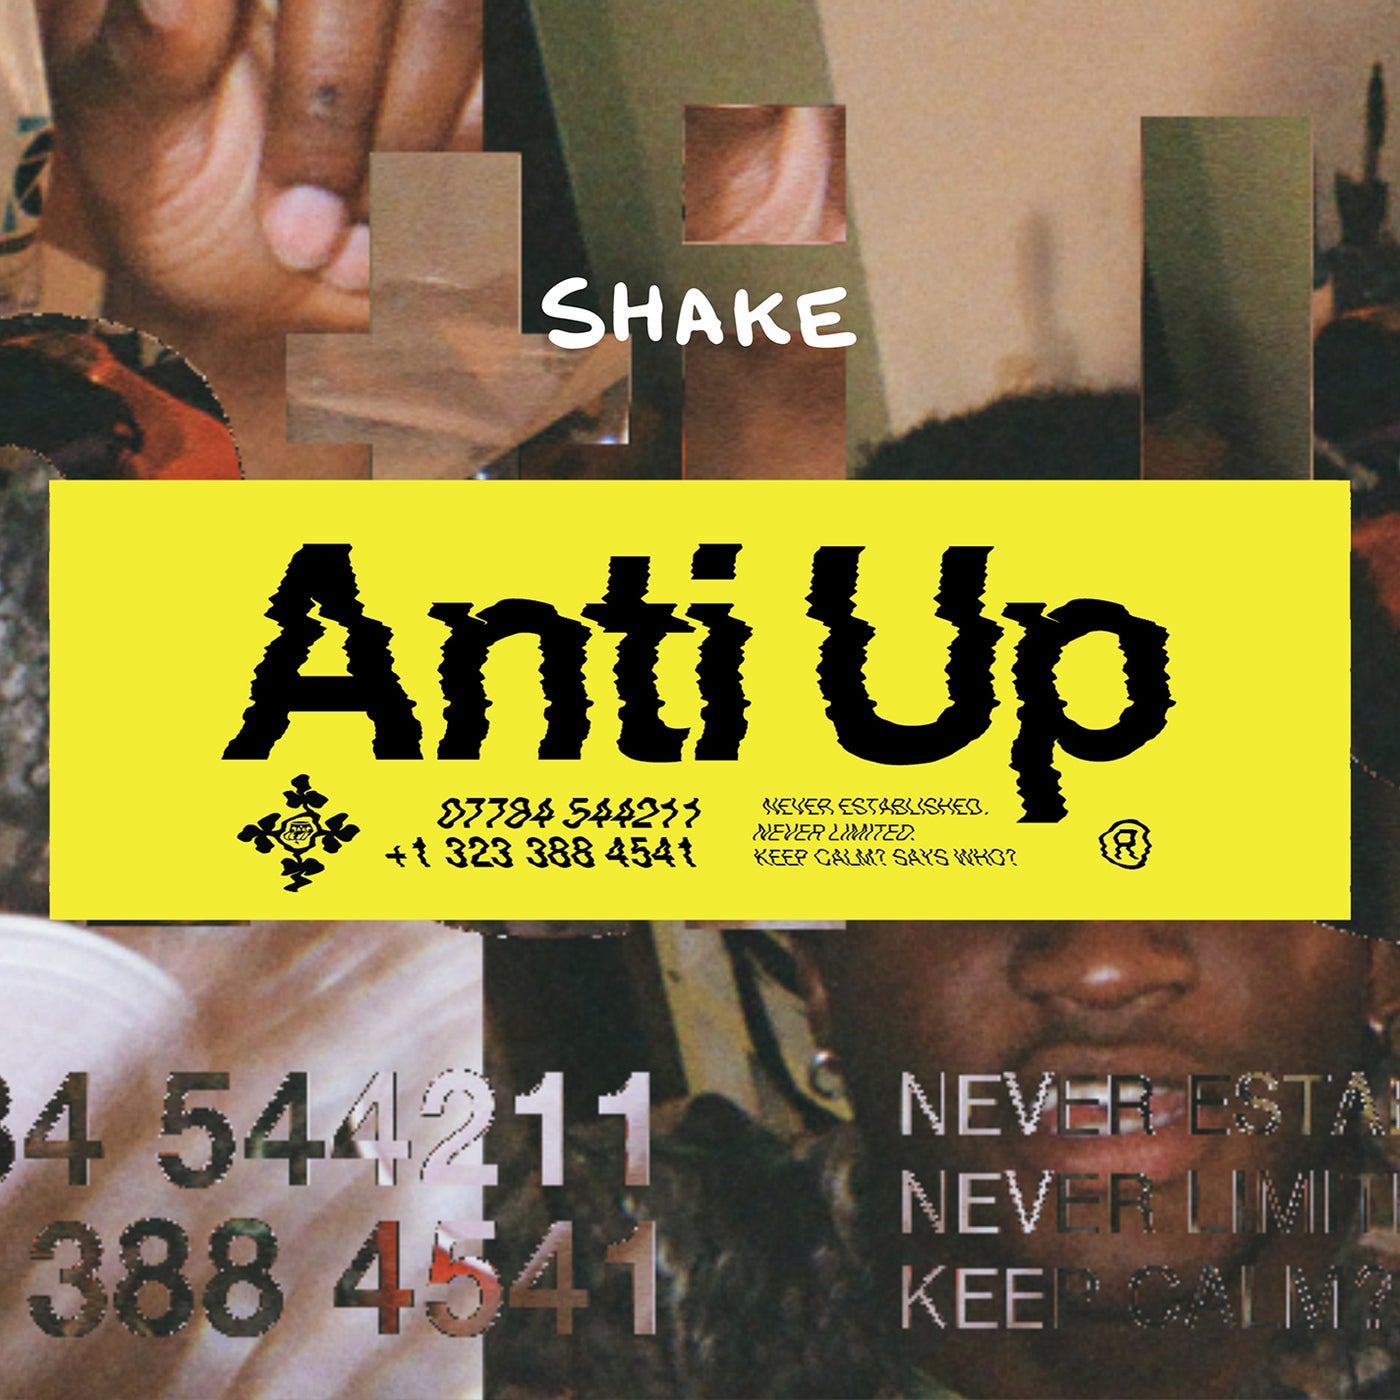 Anti Up – Shake